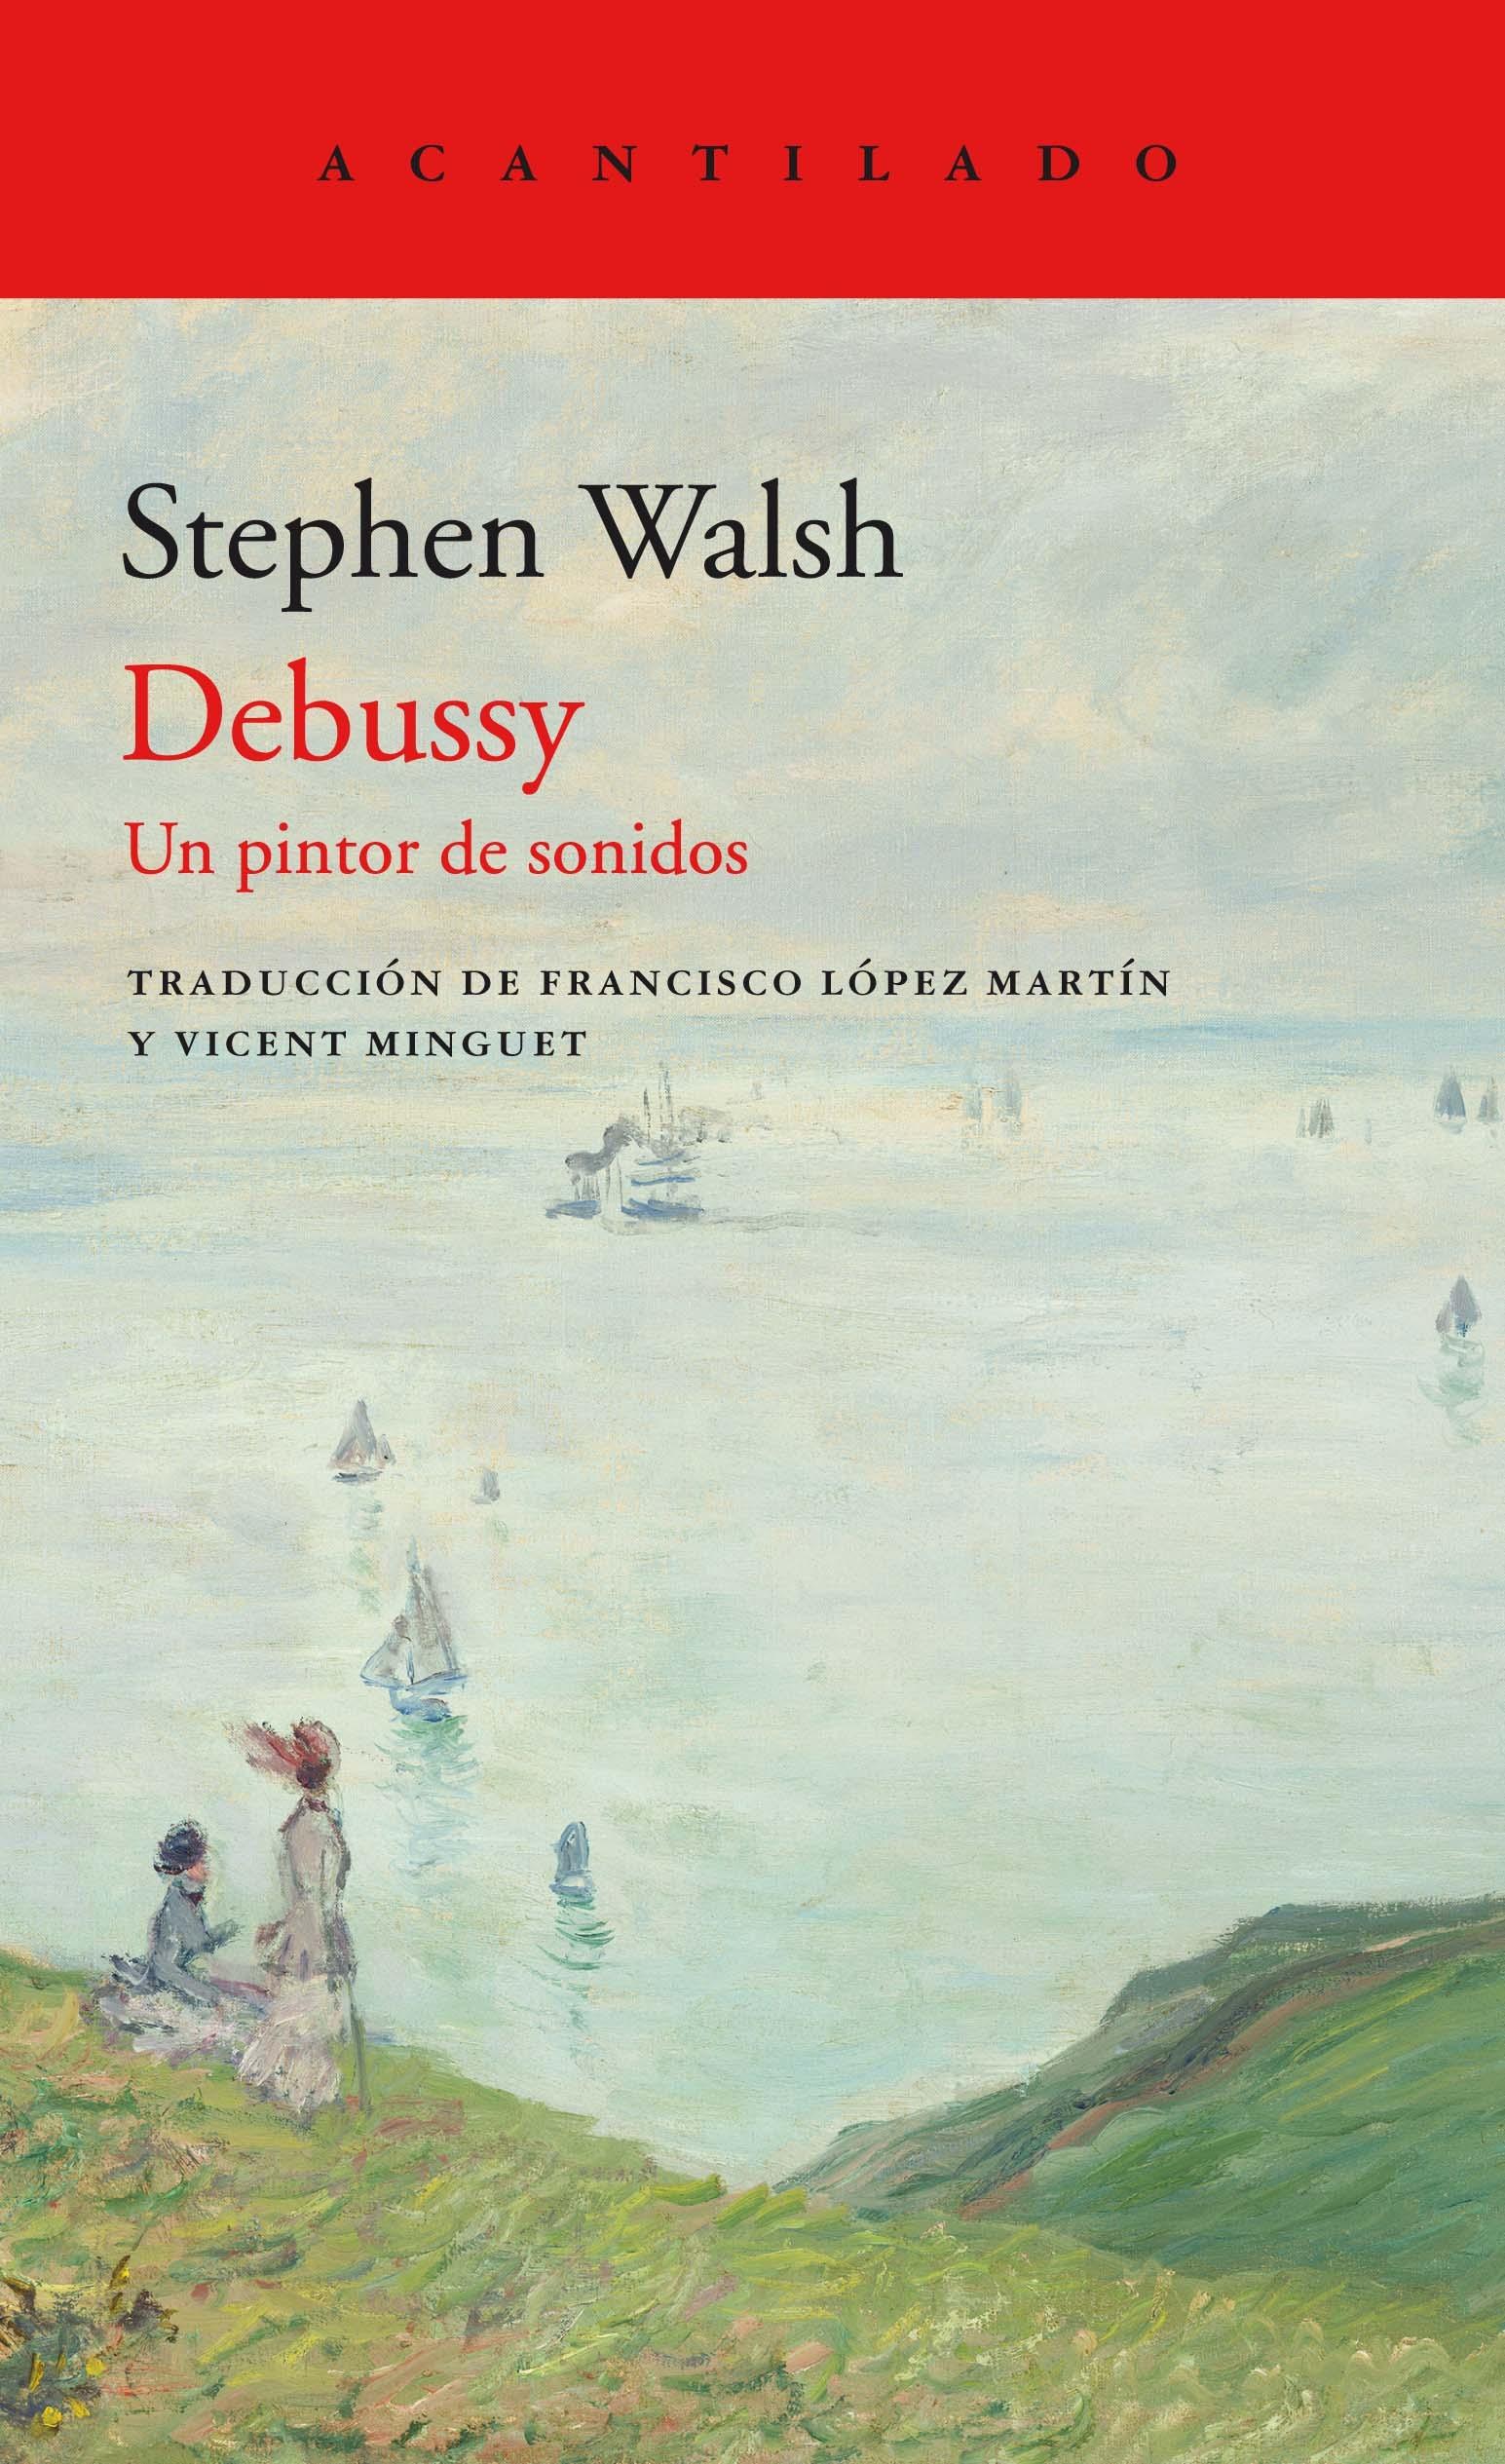 Debussy "Un pintor de sonidos"